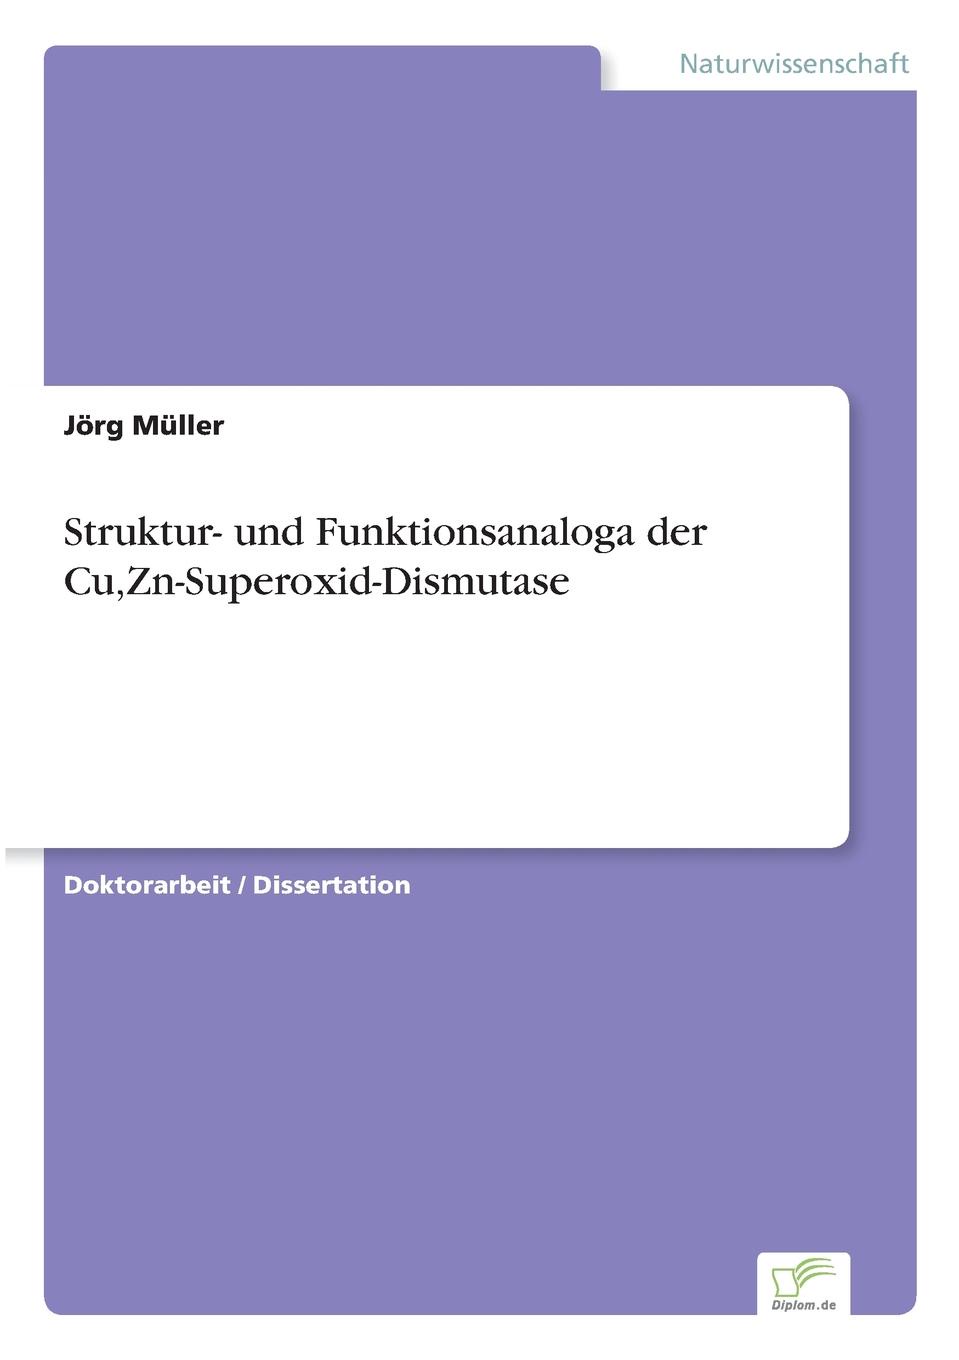 Jörg Müller Struktur- und Funktionsanaloga der Cu,Zn-Superoxid-Dismutase